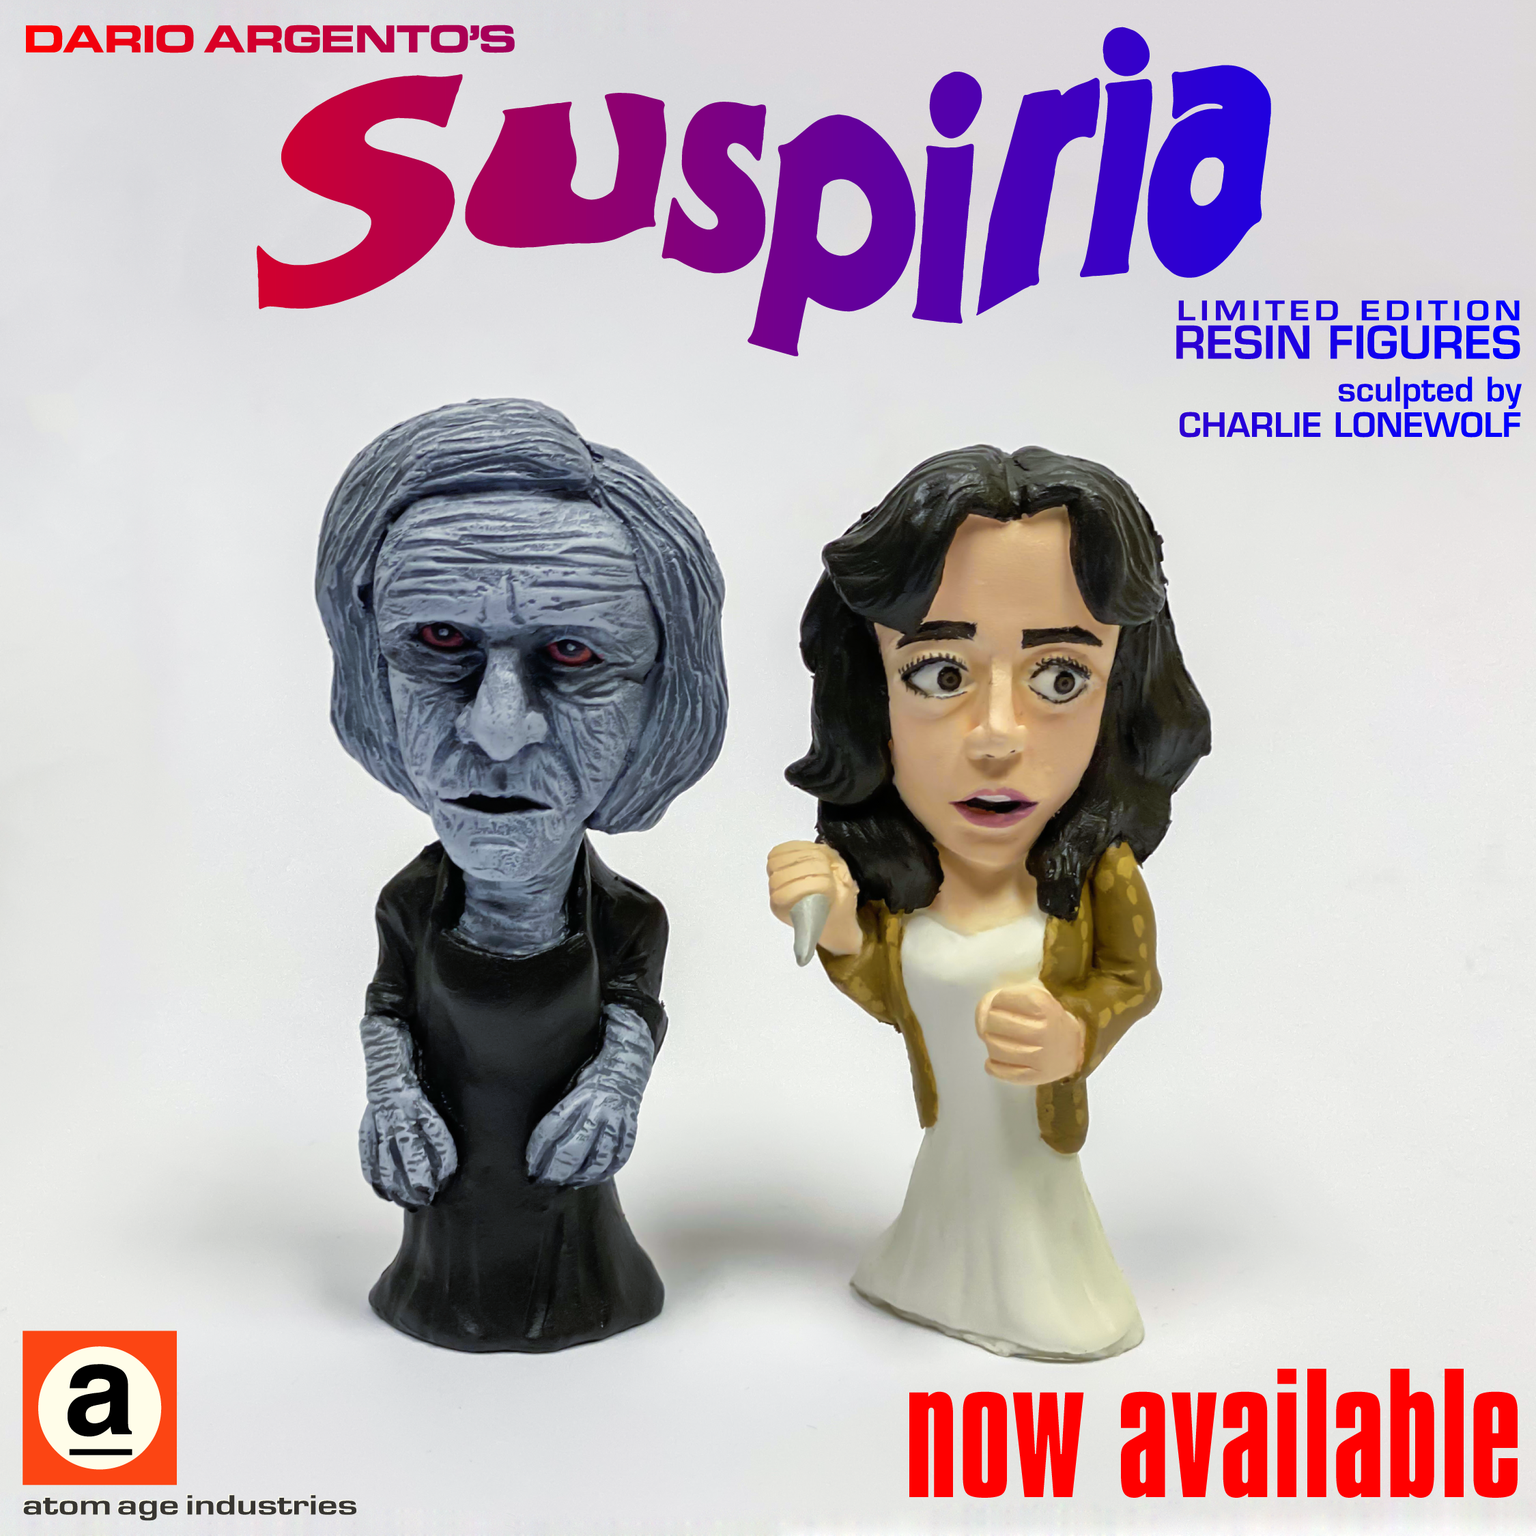 DARIO ARGENTO'S SUSPIRIA "SUZY / MARKOS" RESIN FIGURE SET